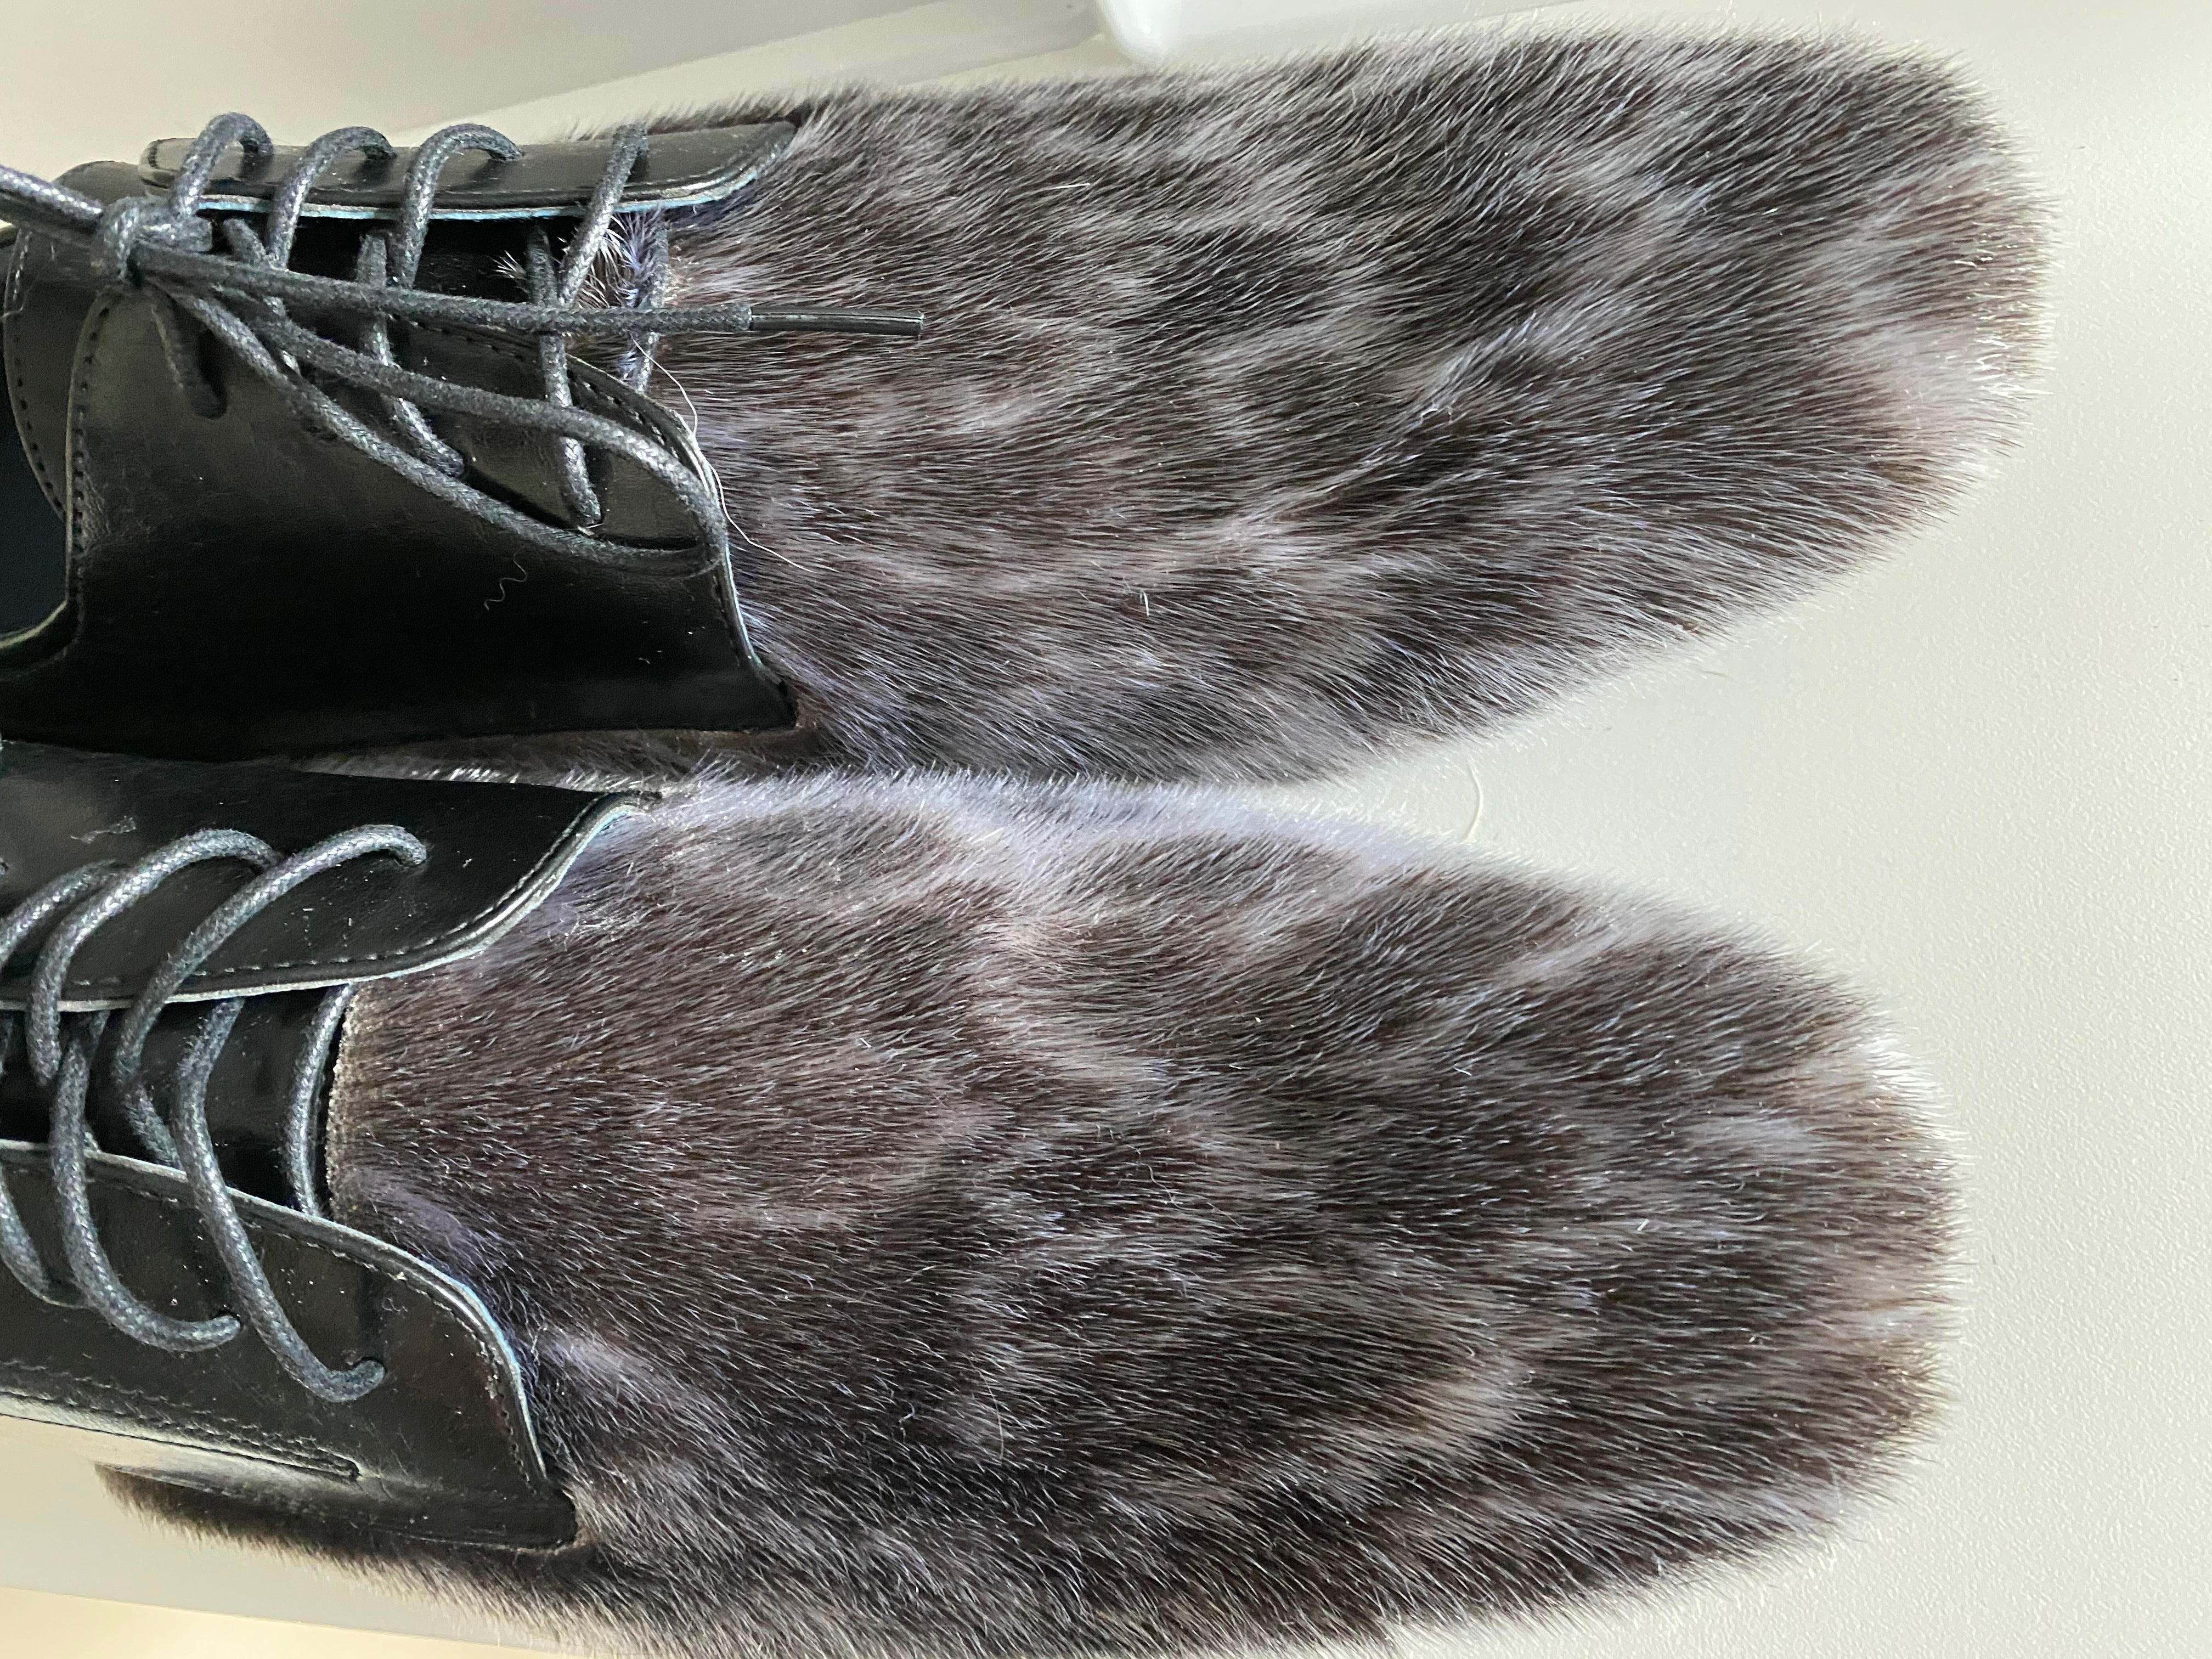 Men’s Size 11 Loafer in Natural Ring Seal Fur